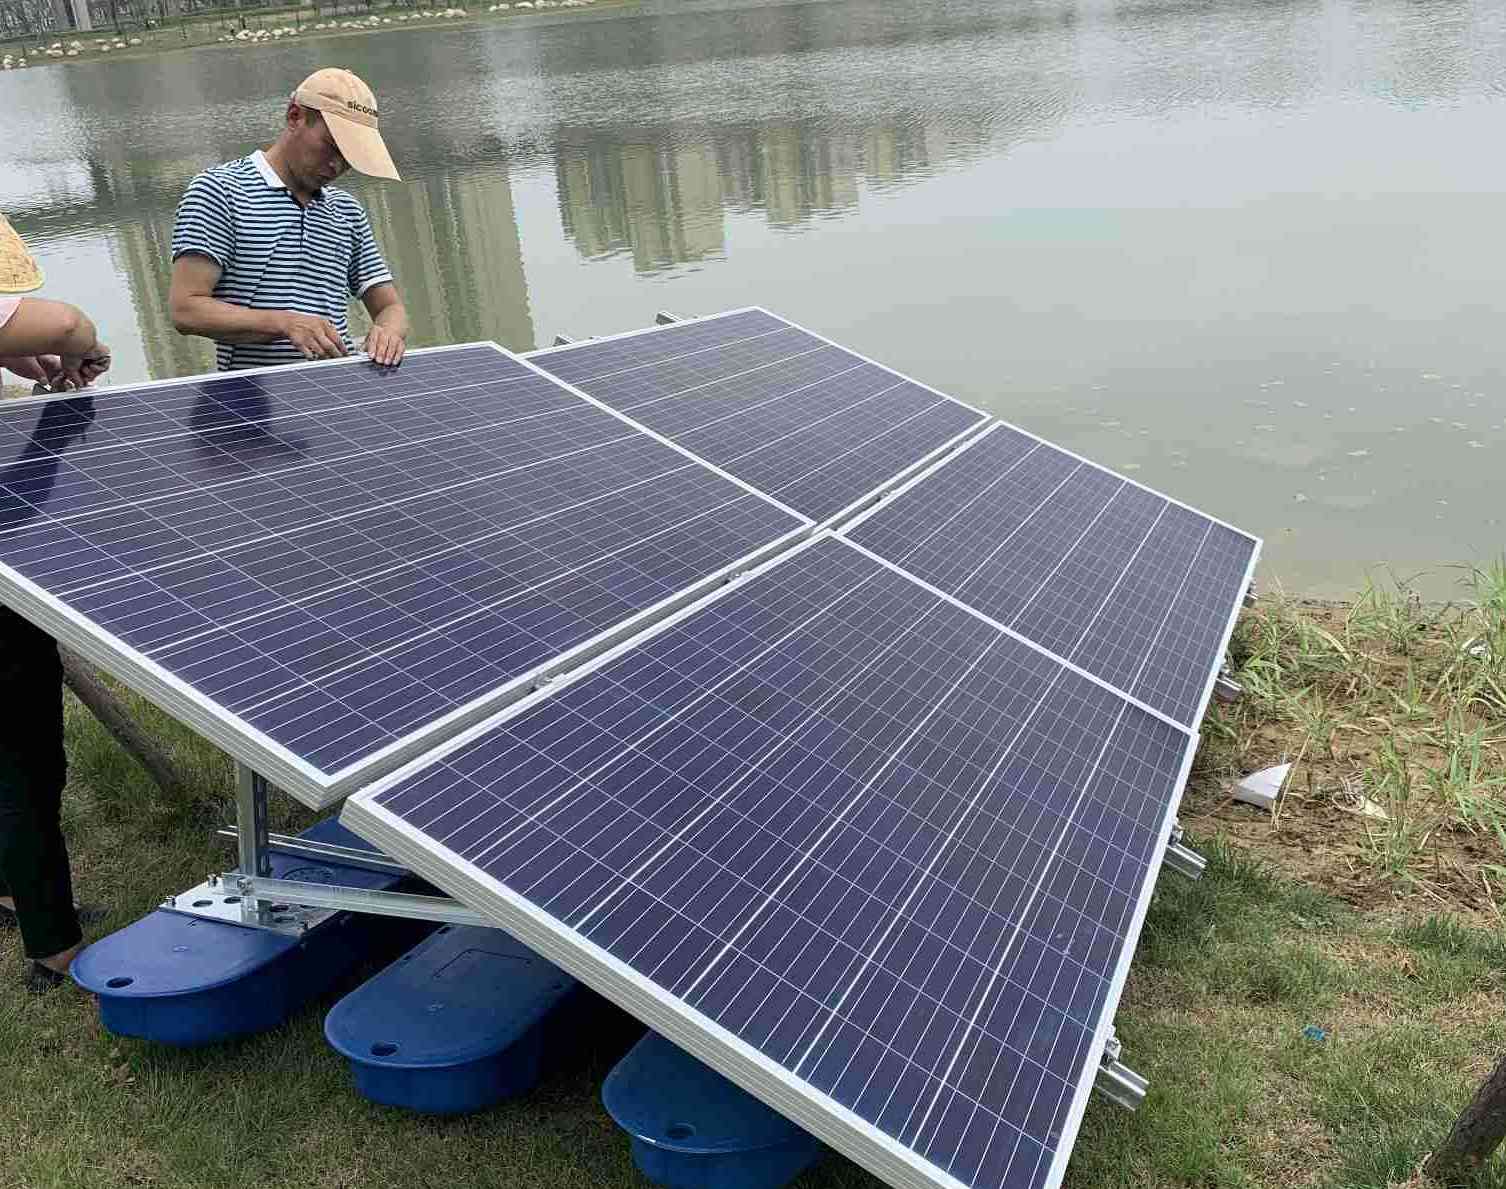  JNTECH sistema de aeração solar aplicado com sucesso ao projeto de governança ambiental em Shenling Tan, Anqing cidade